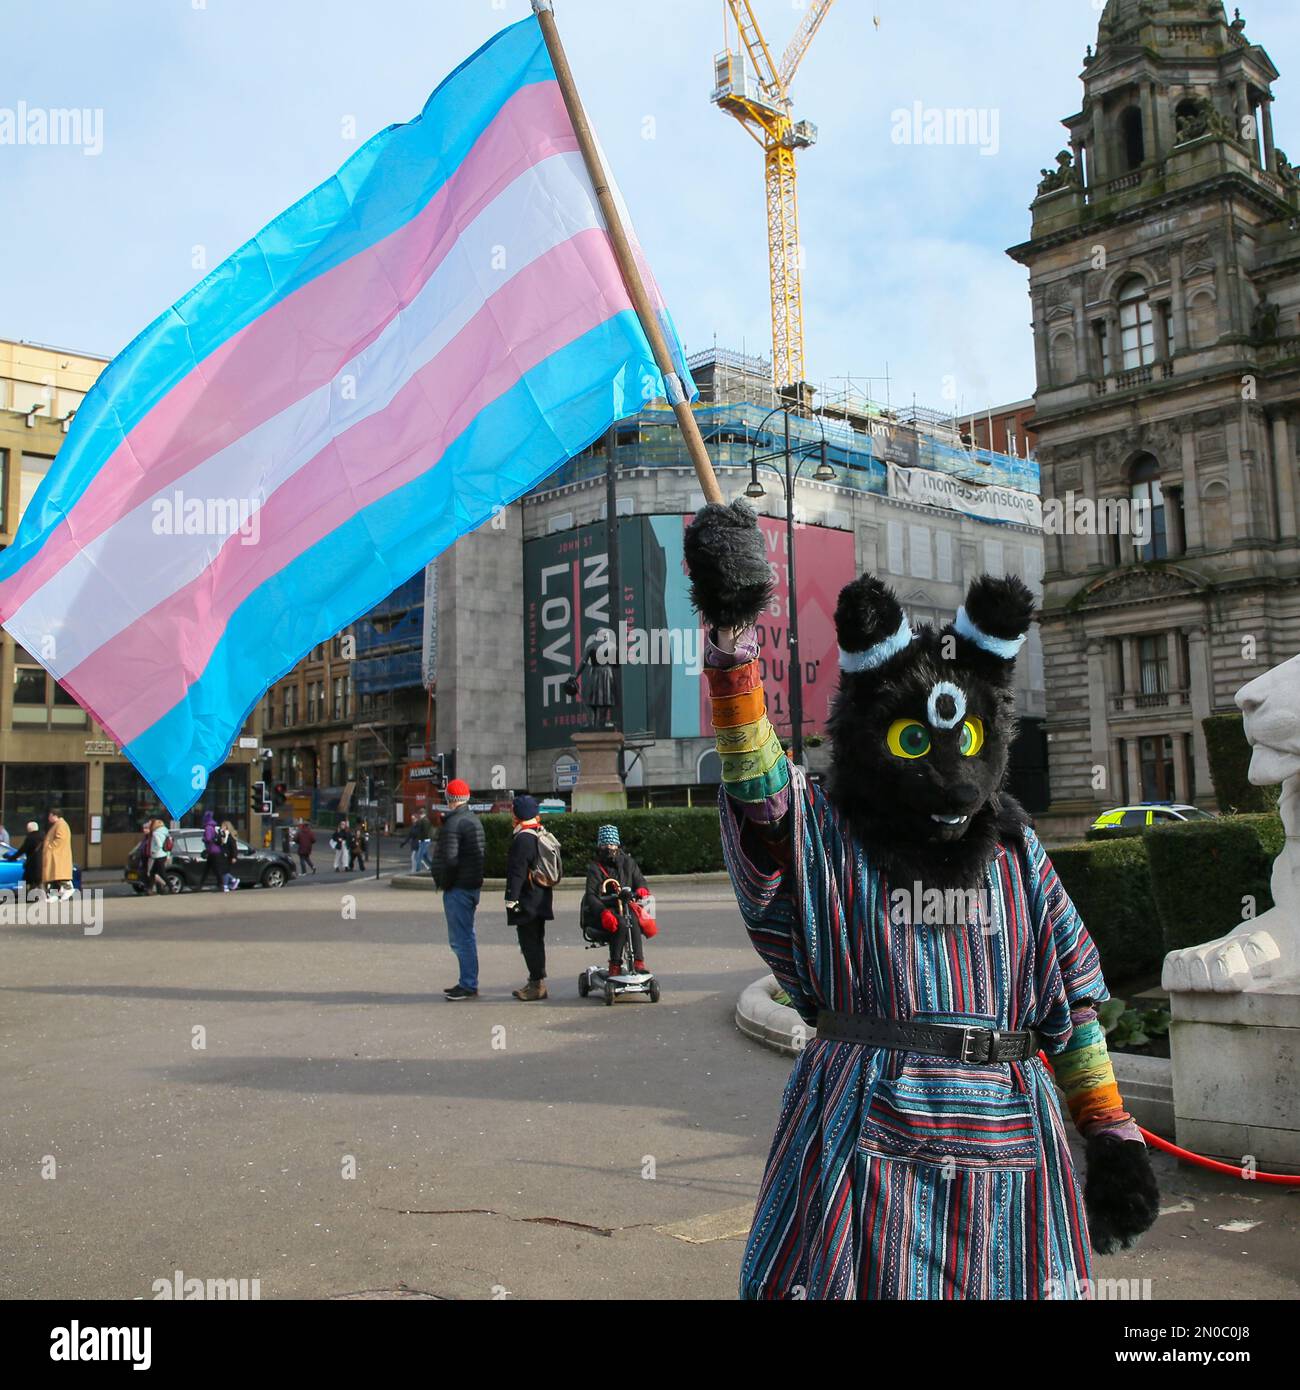 Glasgow, Regno Unito. 5th Feb, 2023. Diverse centinaia di persone si sono manifestate a George Square, Glasgow, per protestare contro l'erosione dei diritti delle donne e il disegno di legge sul riconoscimento di genere approvato dal governo scozzese, che consente agli uomini di identificarsi come donne. C'è stata anche una contro-dimostrazione da parte dei gruppi Pro Trans, anche in George Square, allo stesso tempo. I due gruppi sono stati tenuti separati da una "no go zone" sorvegliata le immagini sono di attivisti pro-transgender alla manifestazione. Credit: Findlay/Alamy Live News Foto Stock